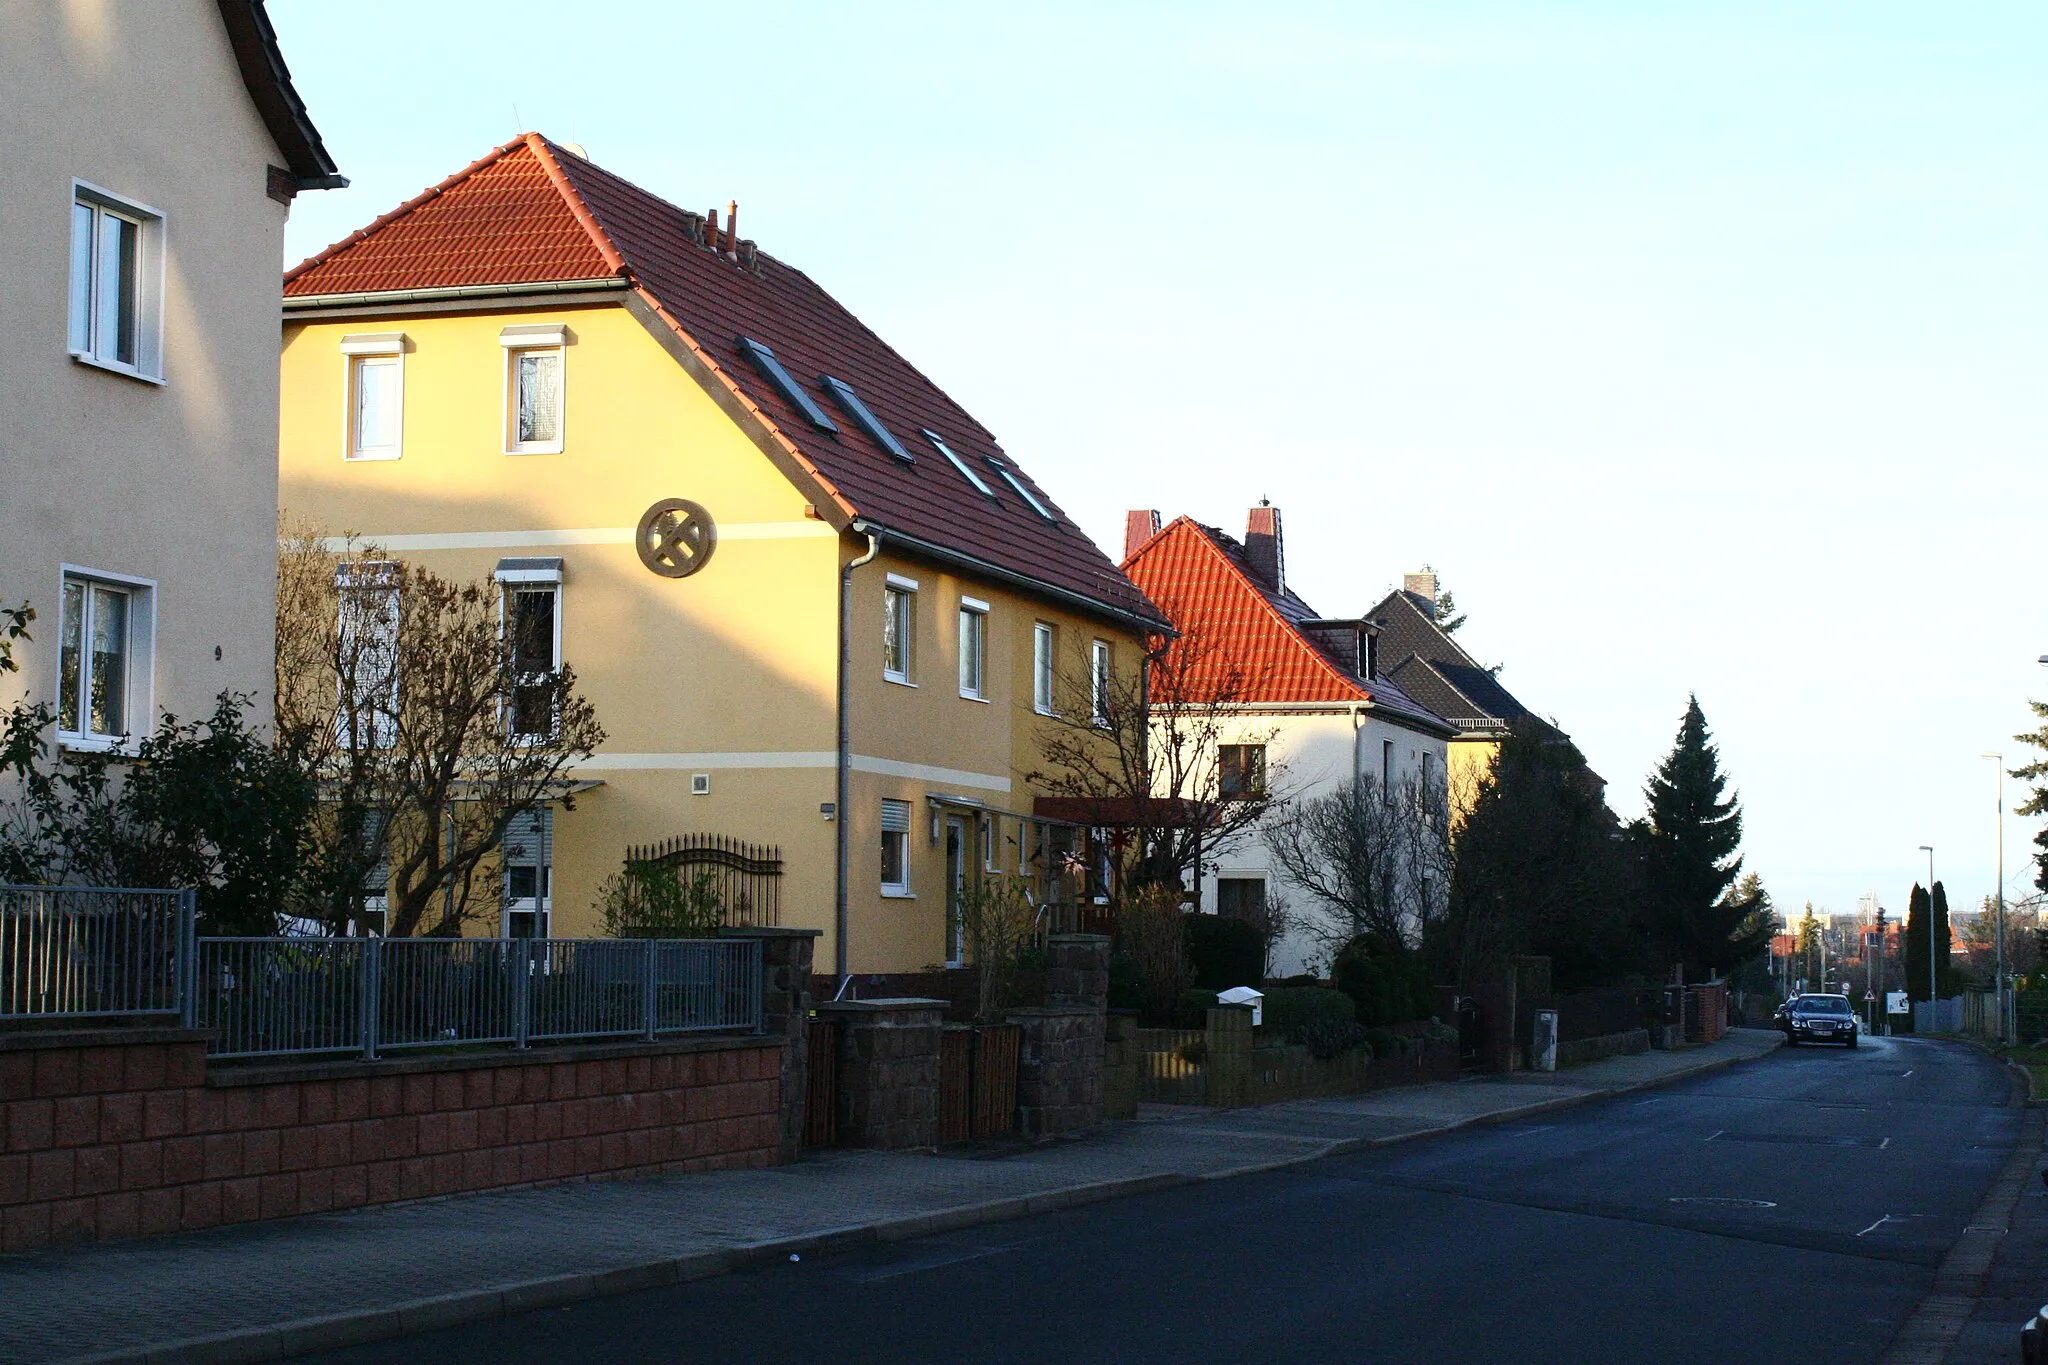 Image of Dresden